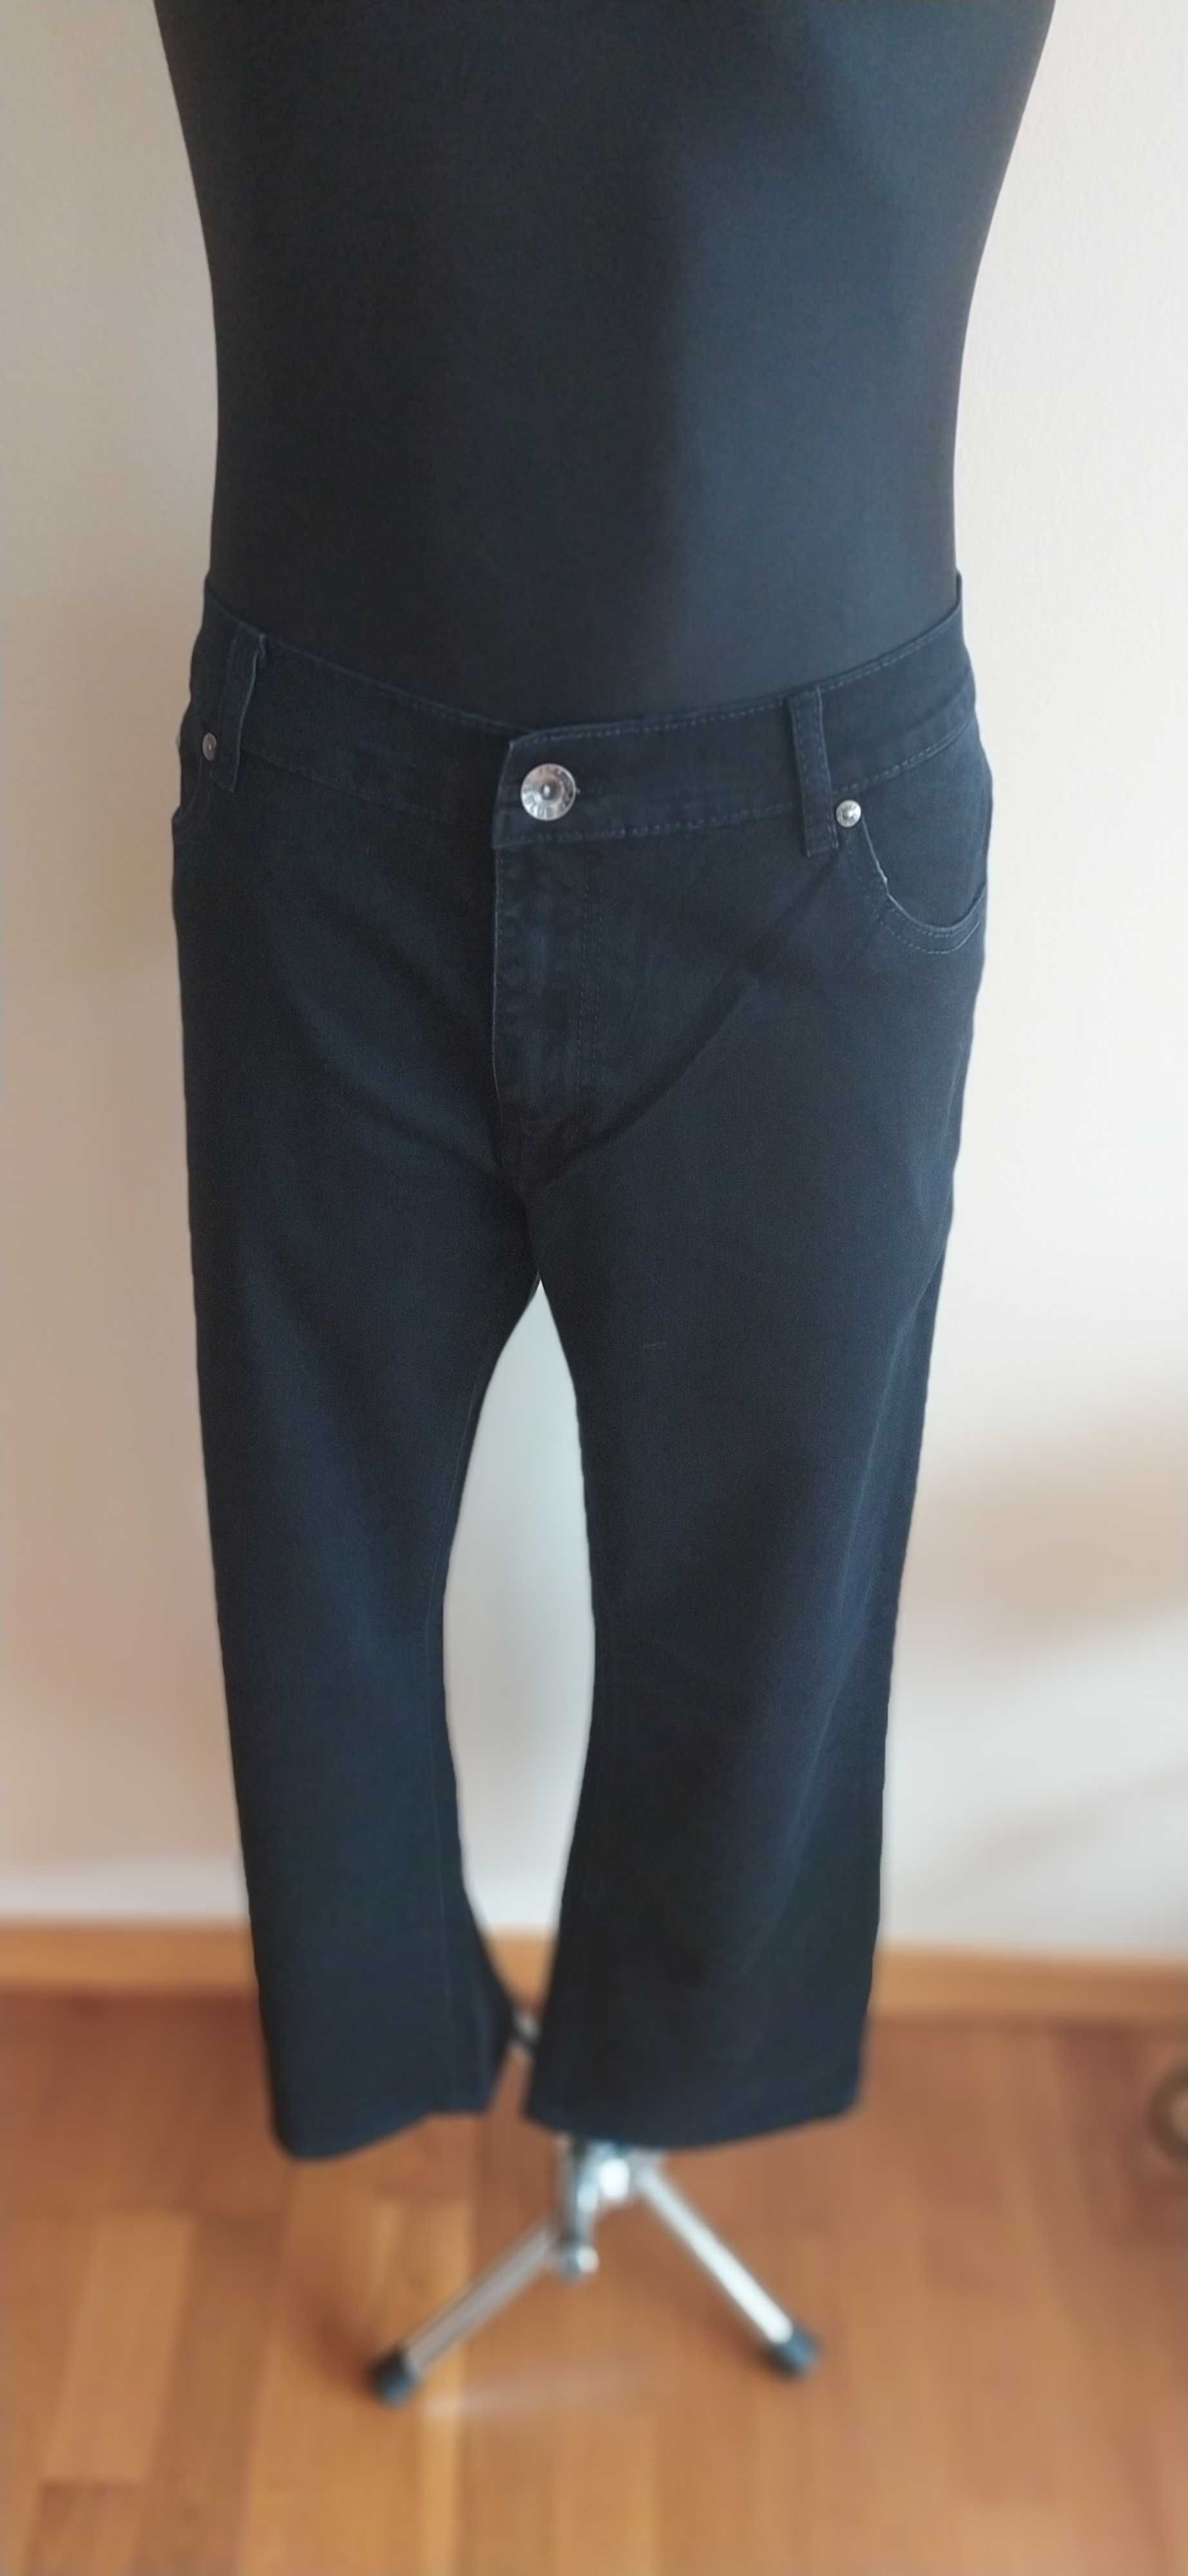 Spodnie nowe jeansowe czarne, super gatunek